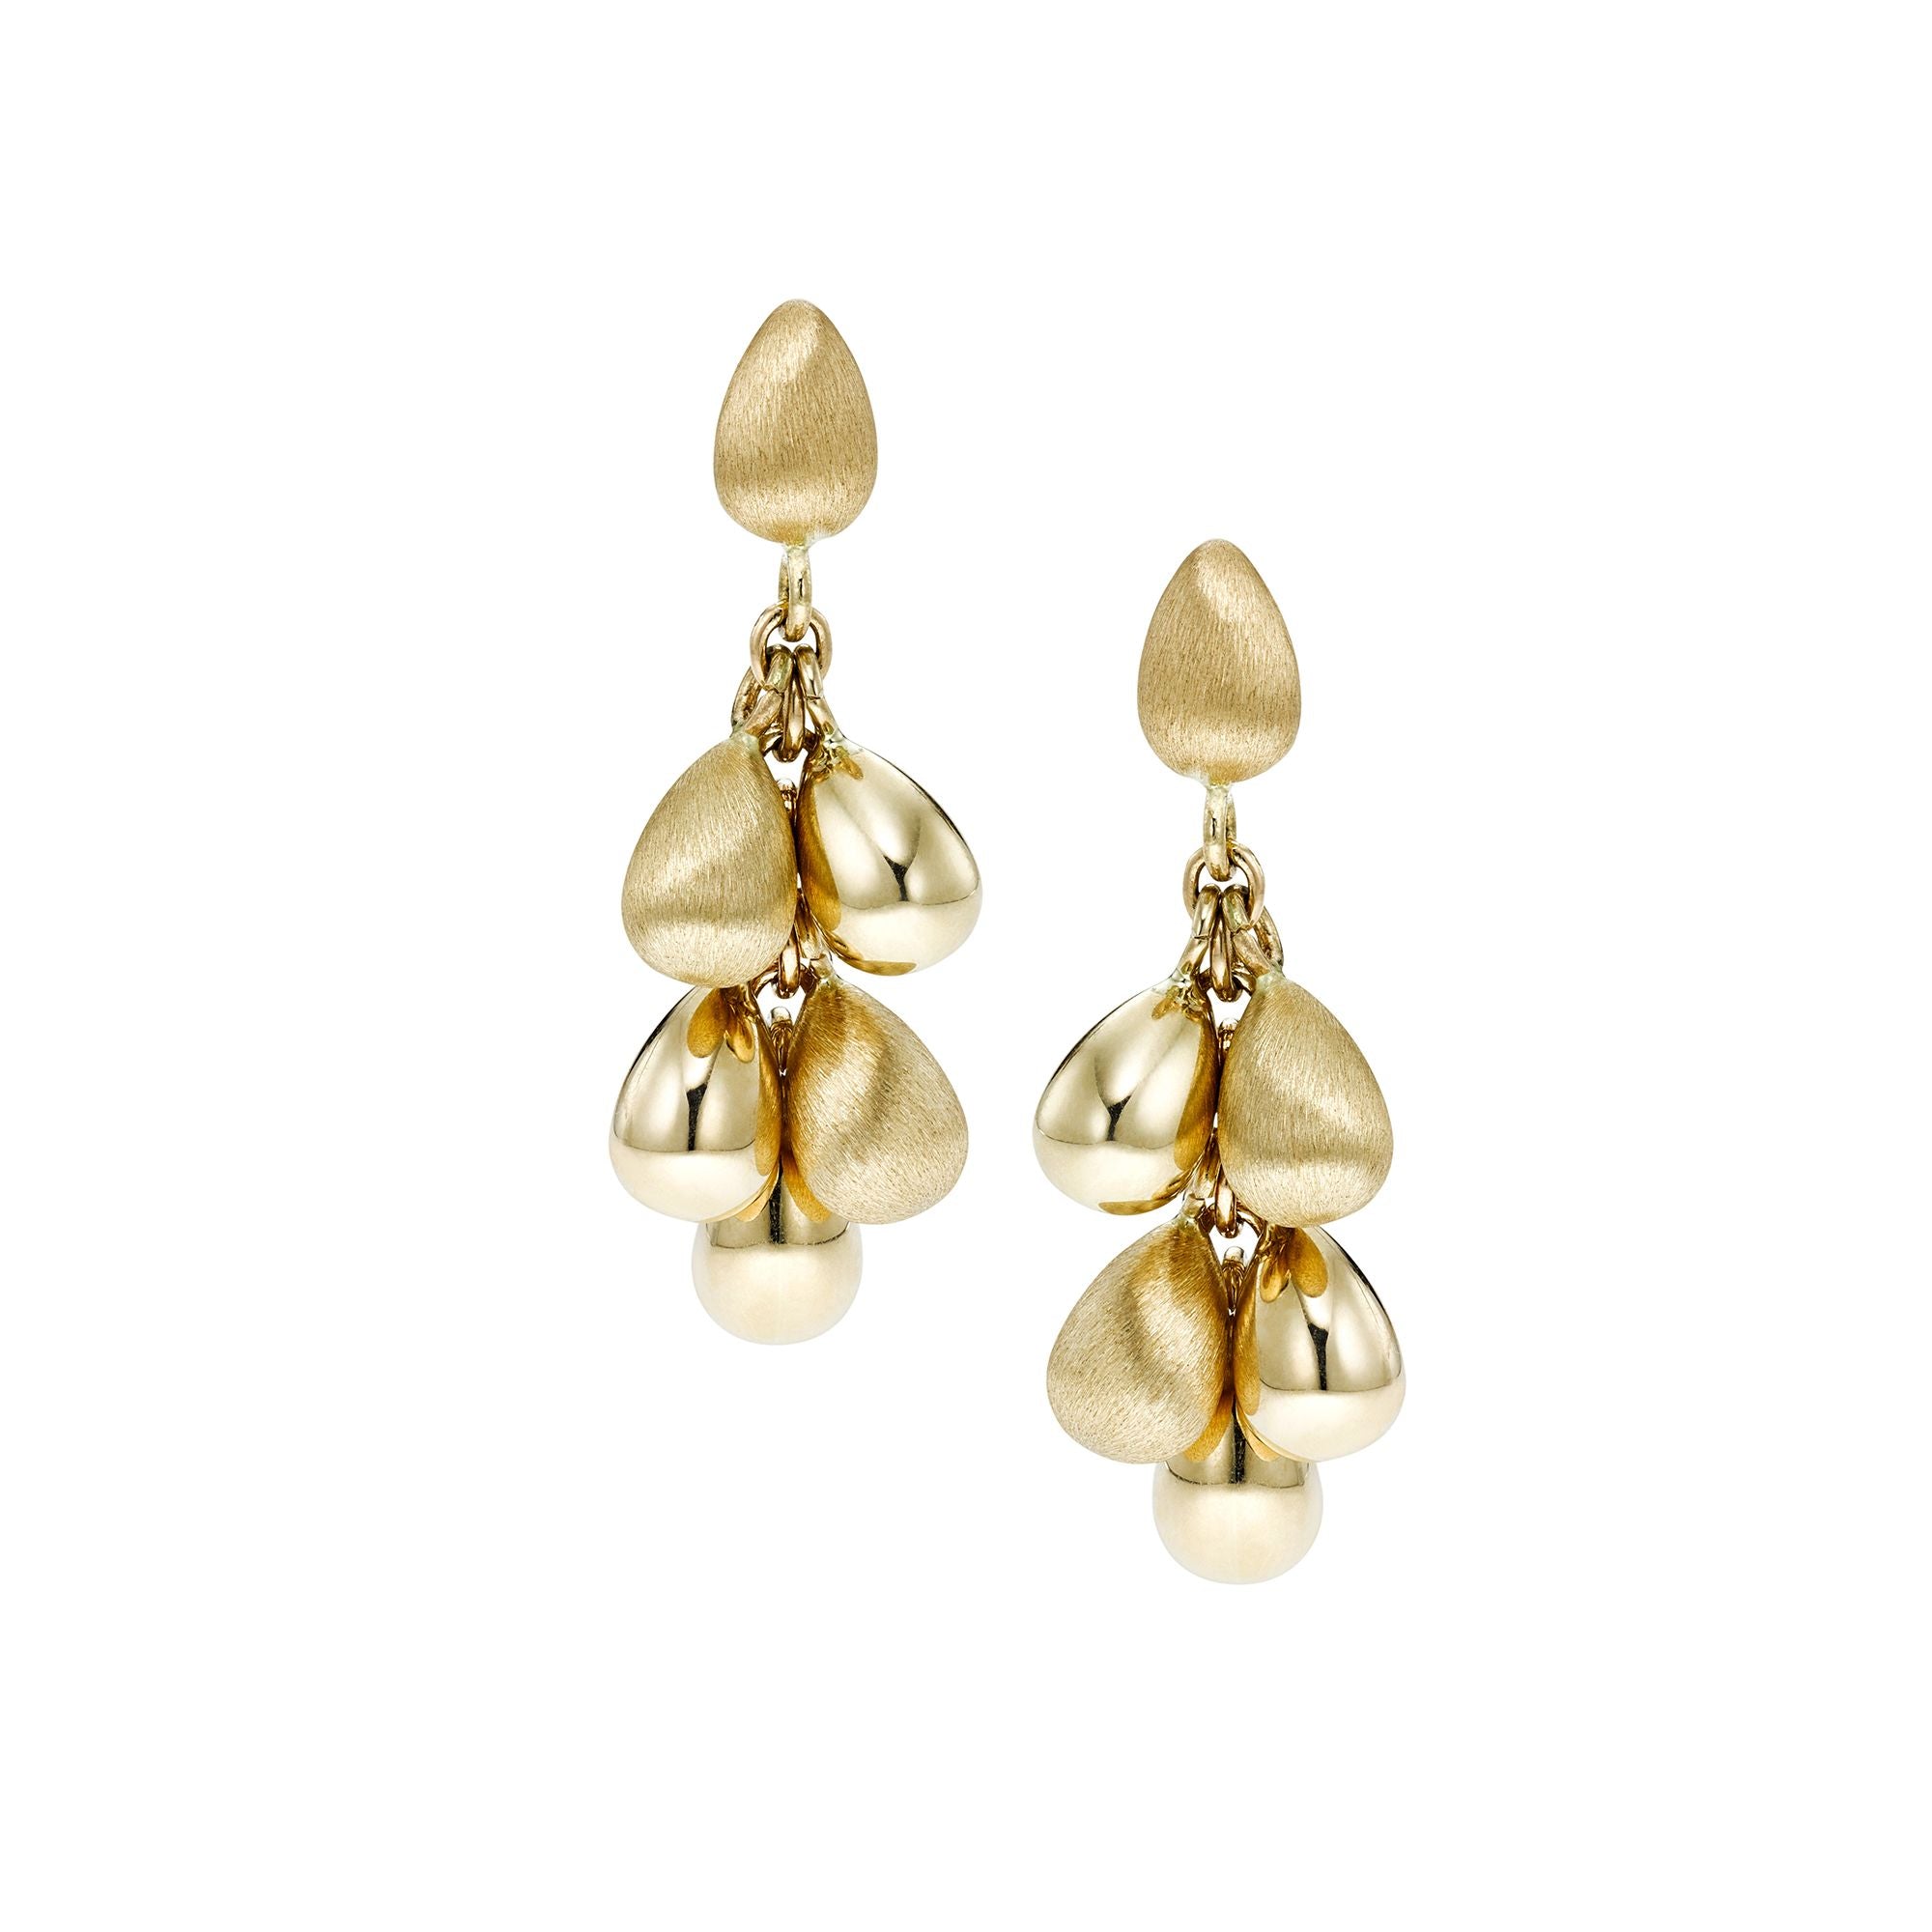 14K Yellow Gold Tear Drop Earrings fine designer jewelry for men and women